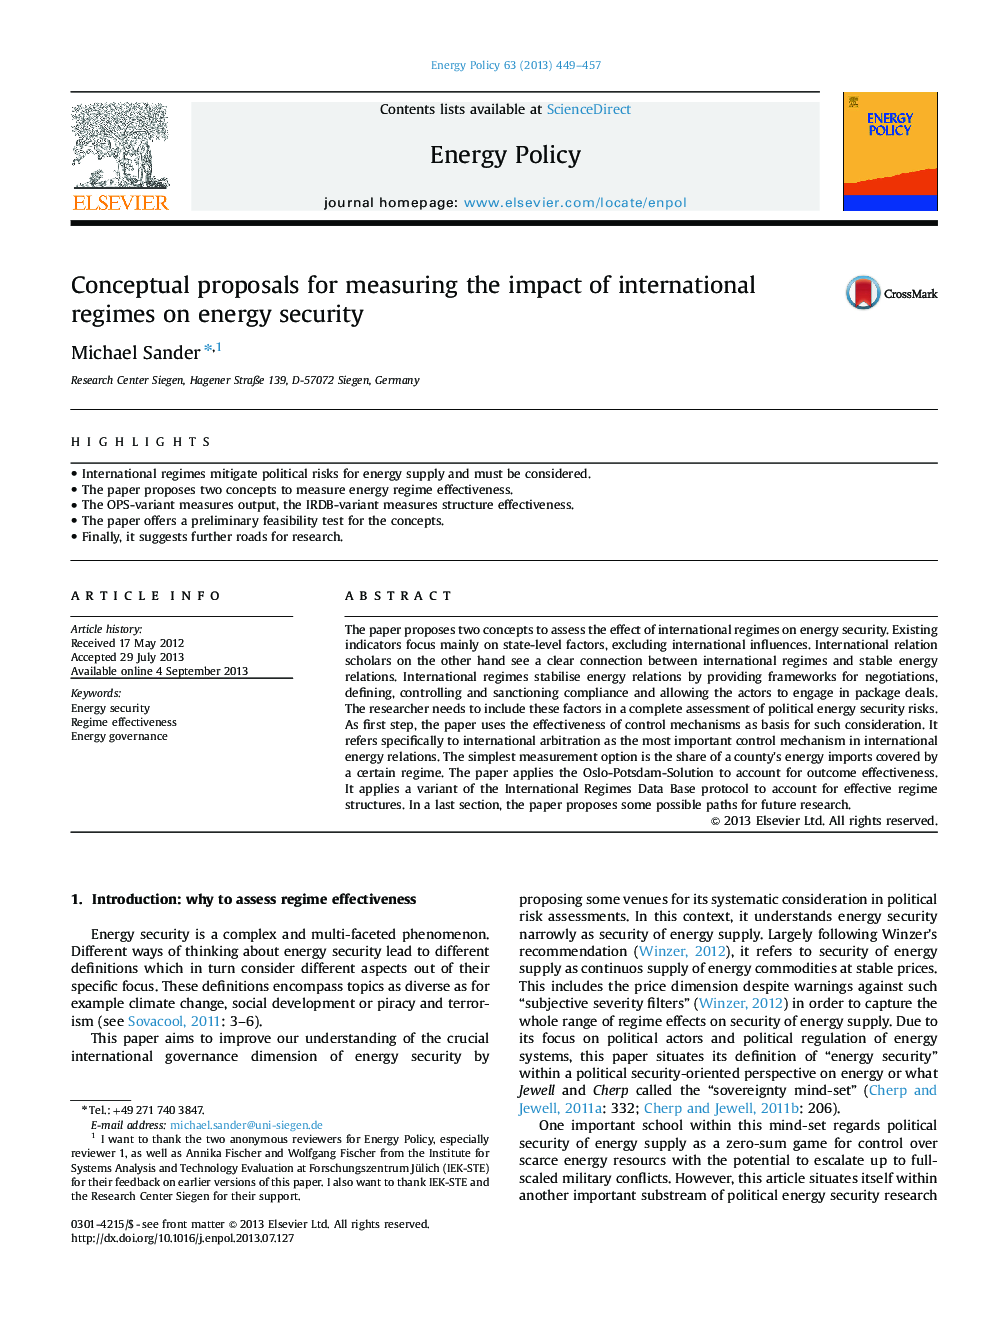 پیشنهادات مفهومی برای اندازه گیری تاثیر رژیم های بین المللی در امنیت انرژی 